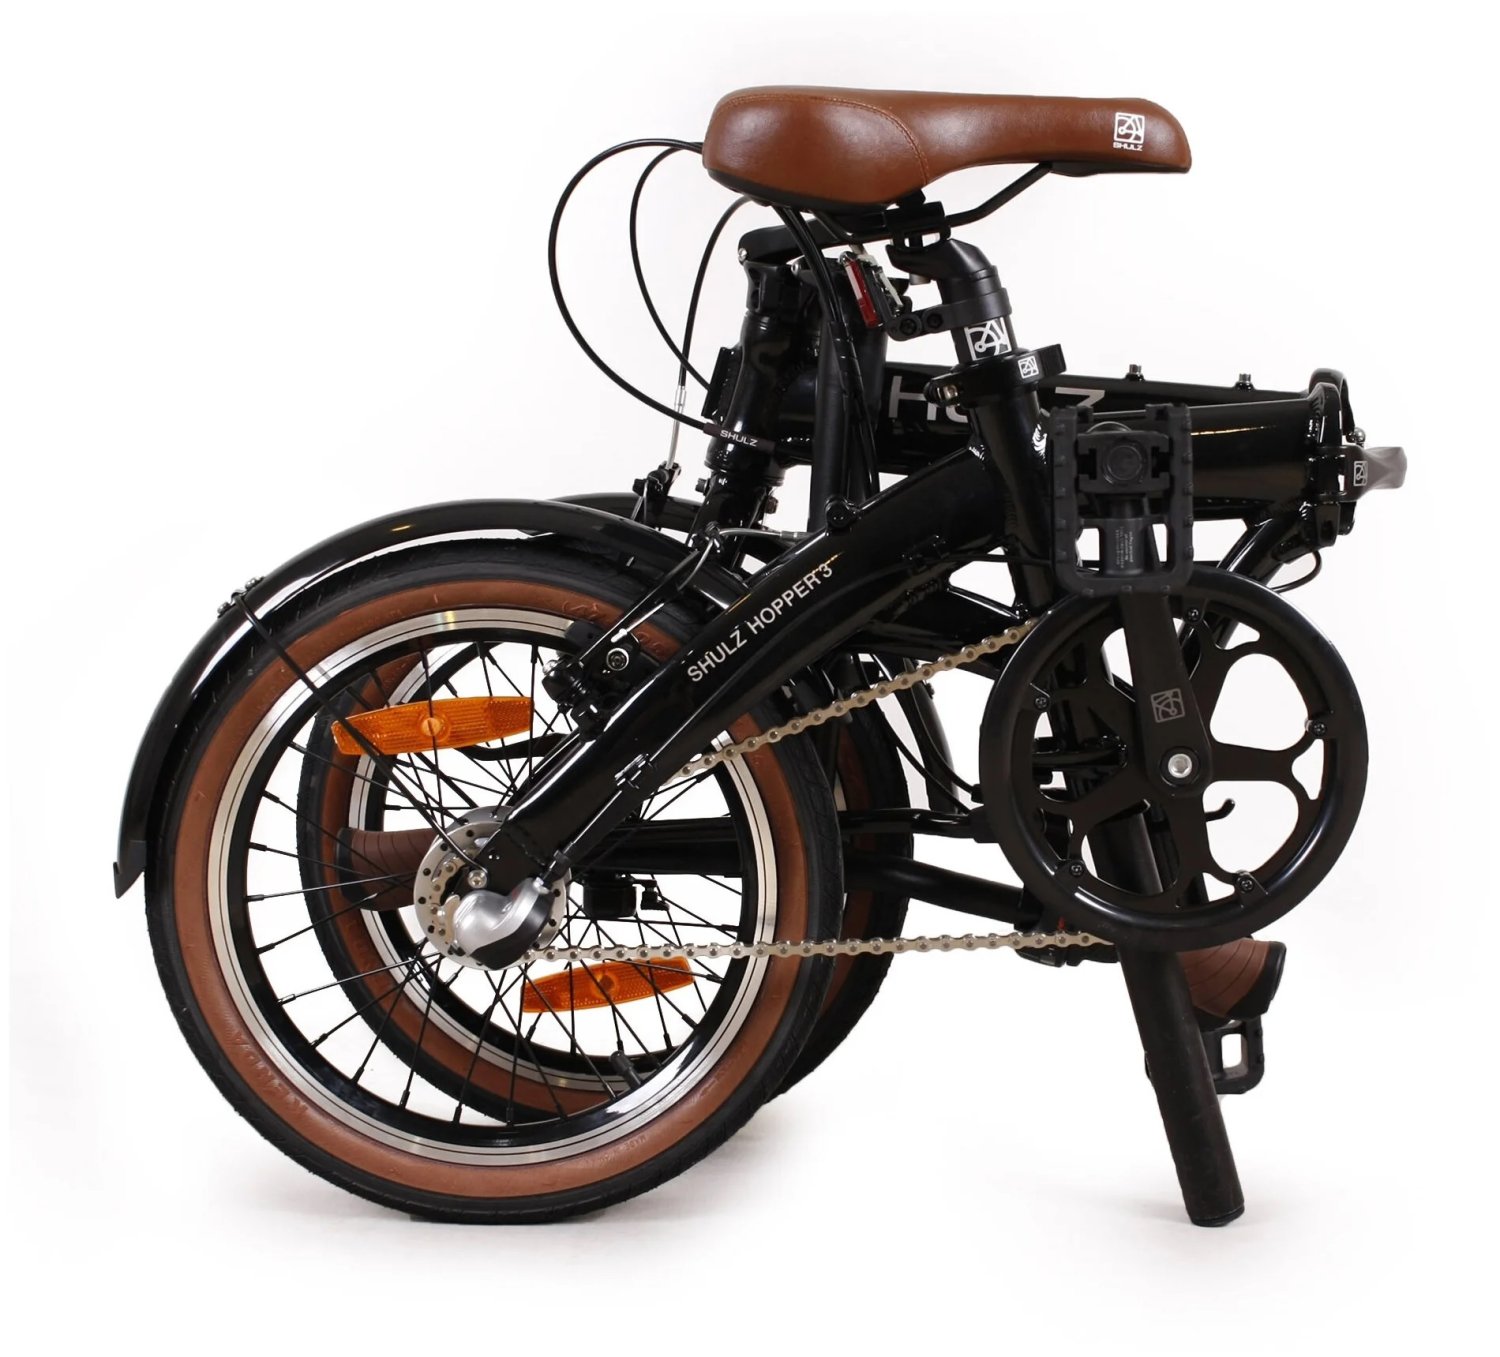 Складной велосипед SHULZ Hopper 3, black/черный YS-768, 2021, 2000008311625